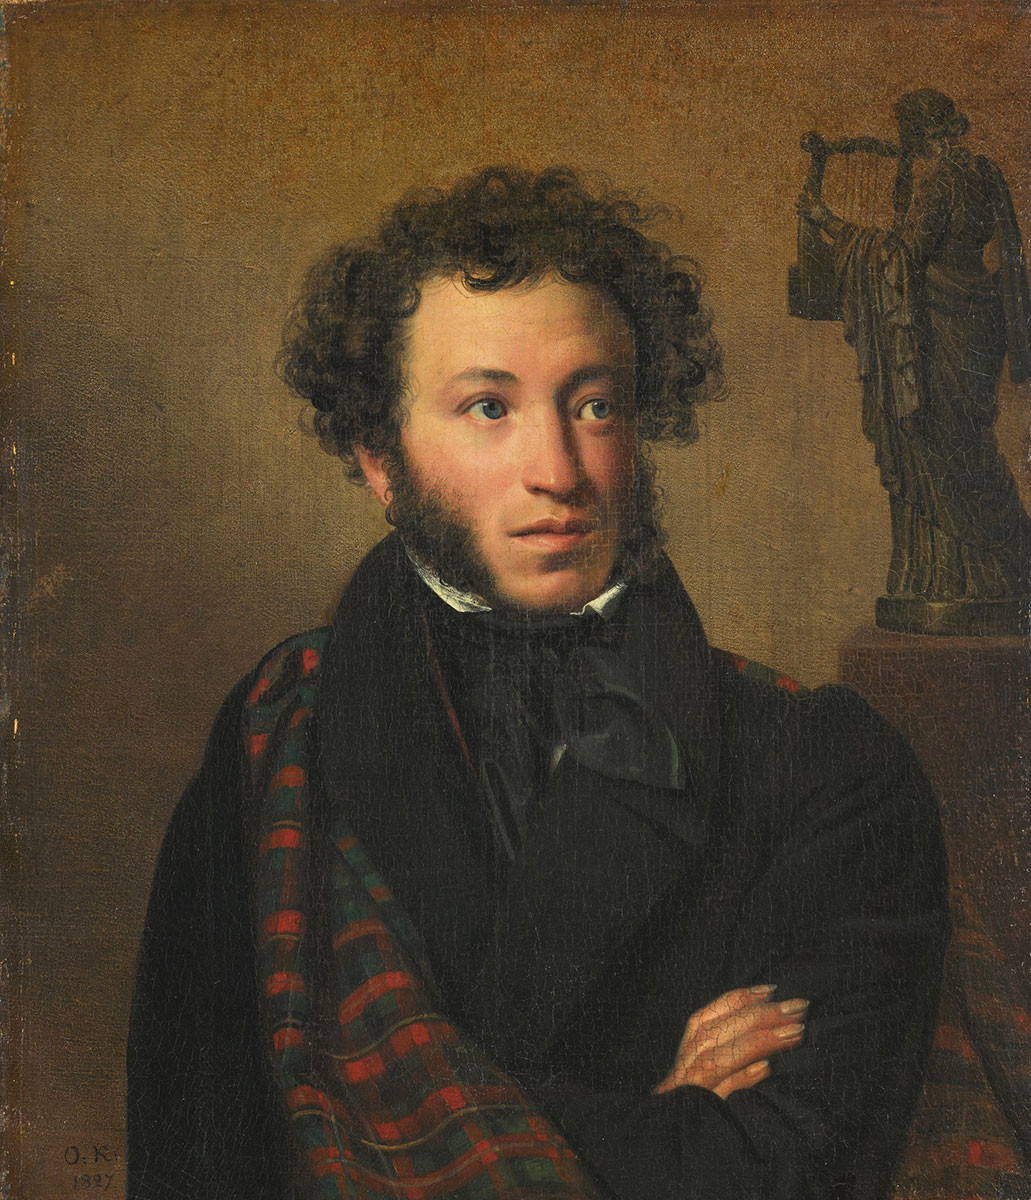 Porträt von Alexander Puschkin von Orest Kiprenski, 1827.